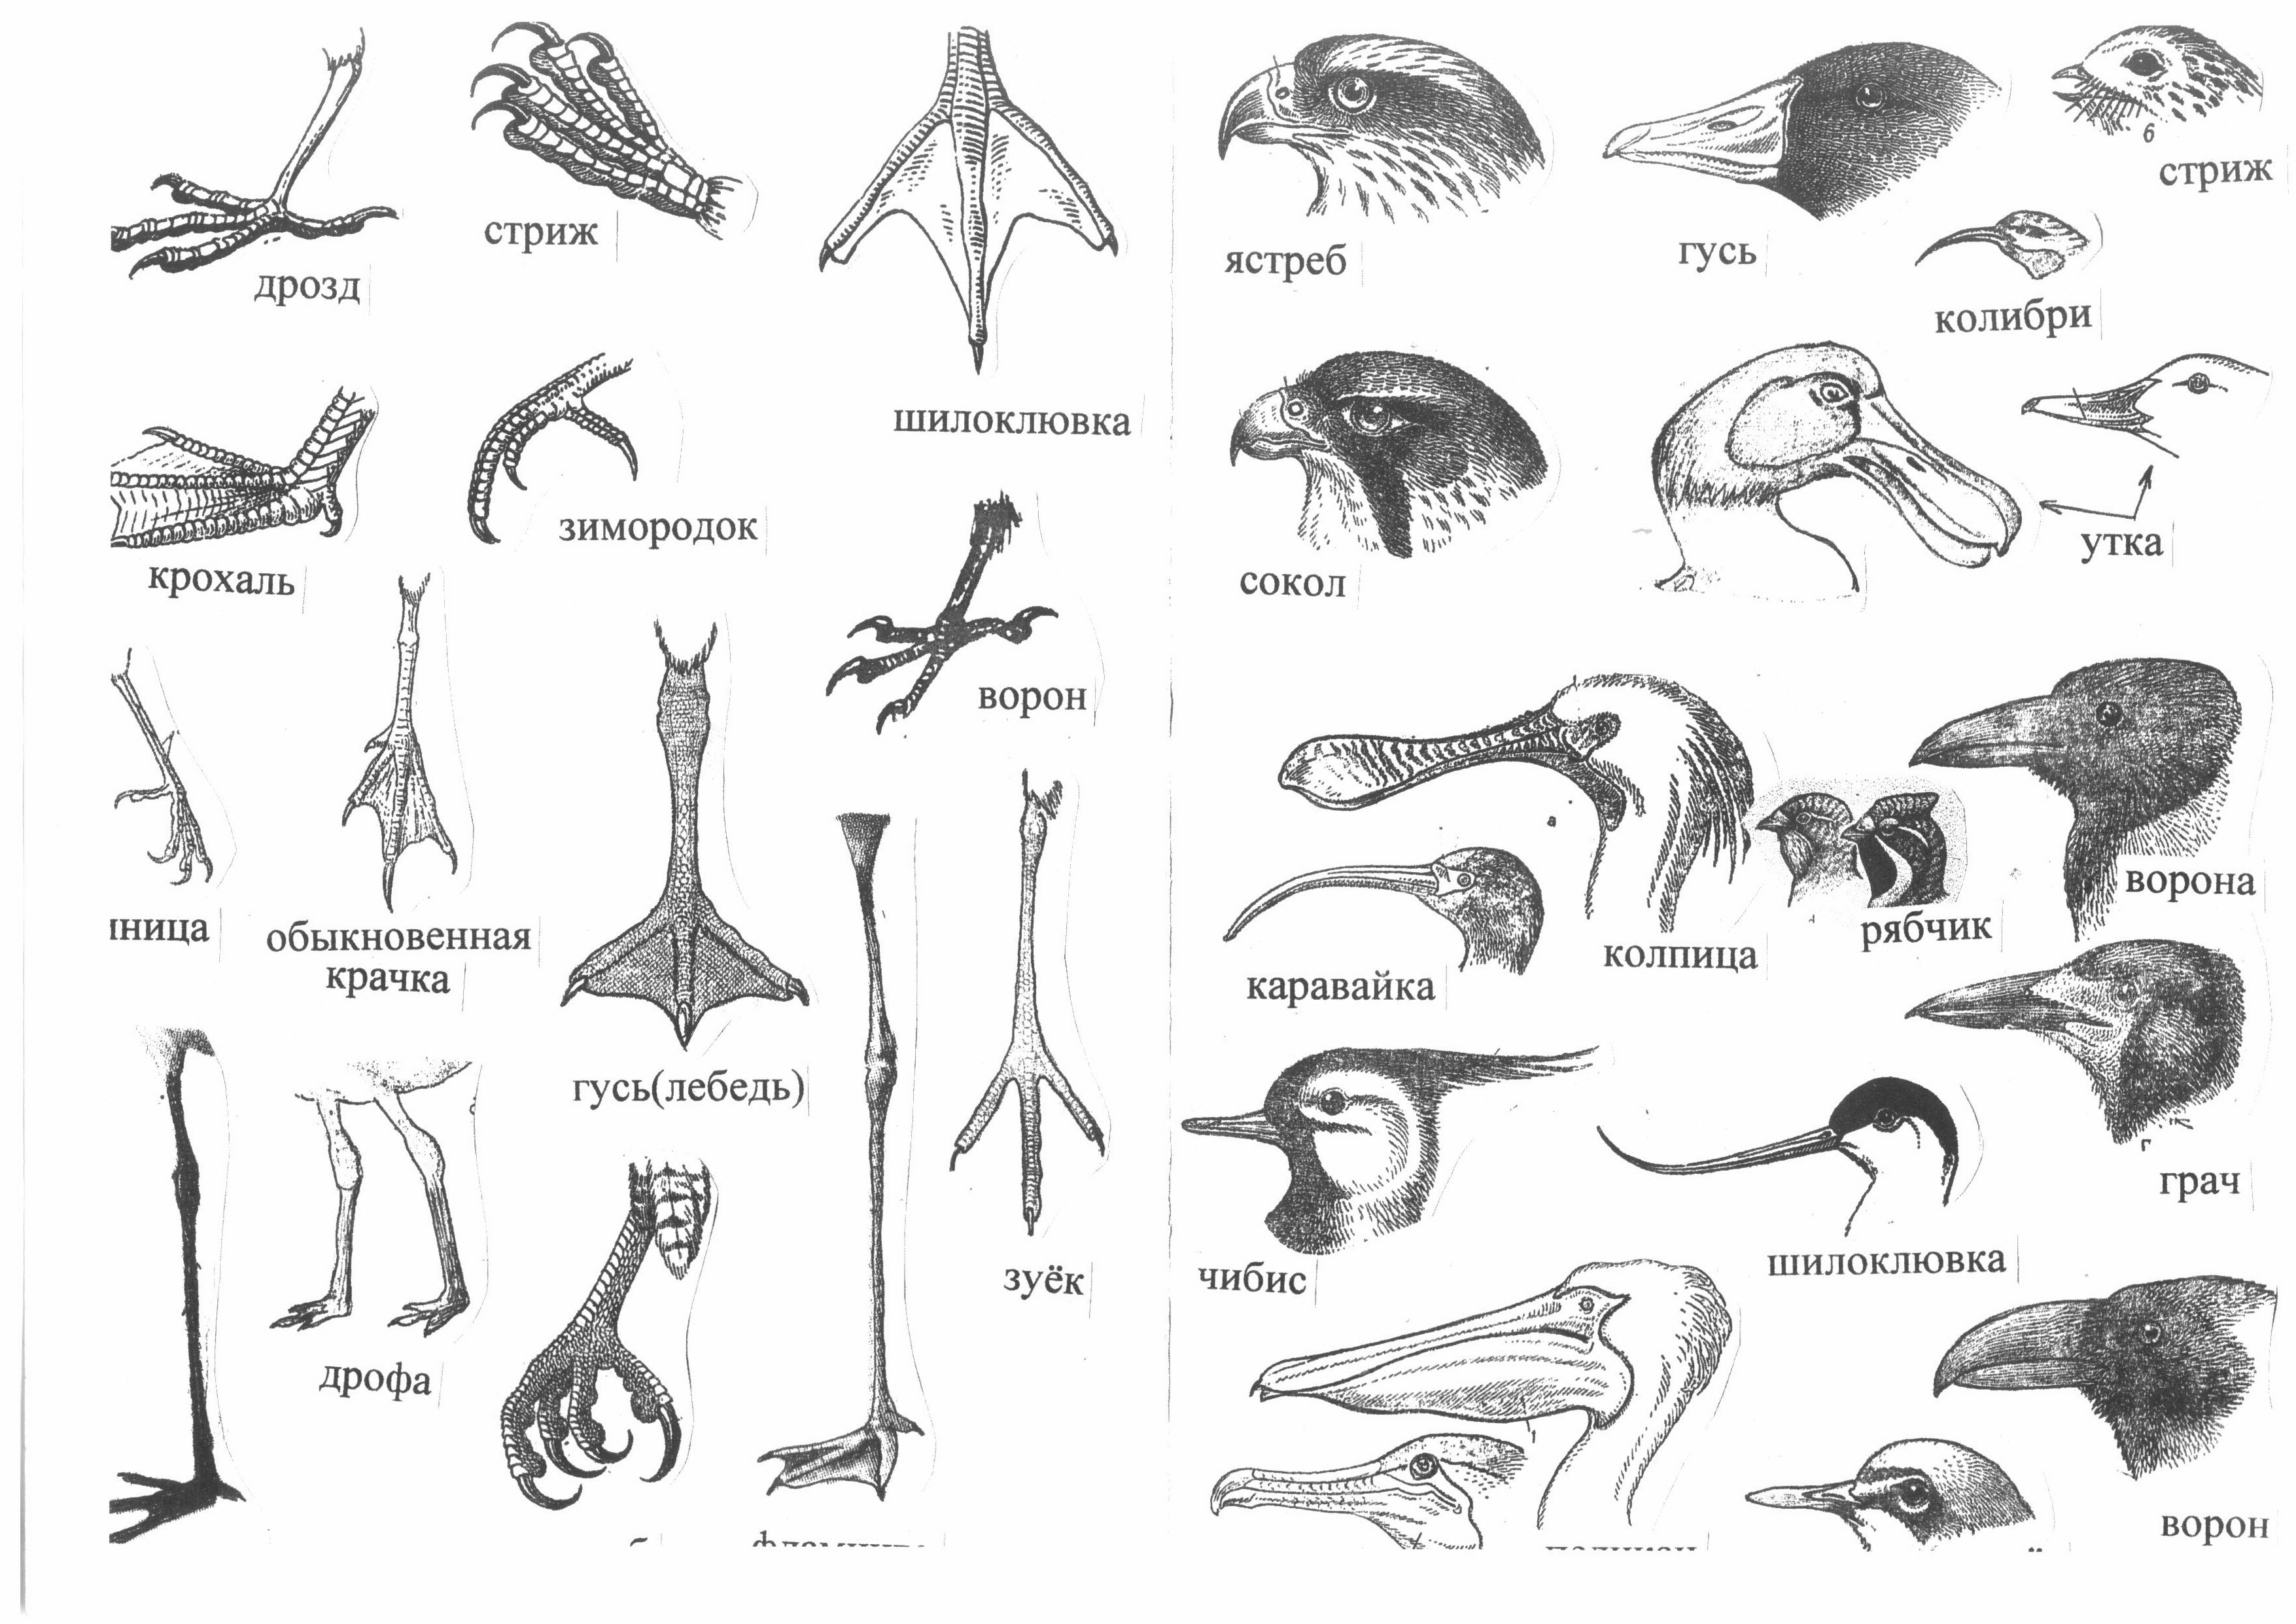 Части клюва птиц. Разнообразие клювов и лап птиц. Строение клюва водоплавающих птиц. Типы клювов. Формы клюва у птиц.